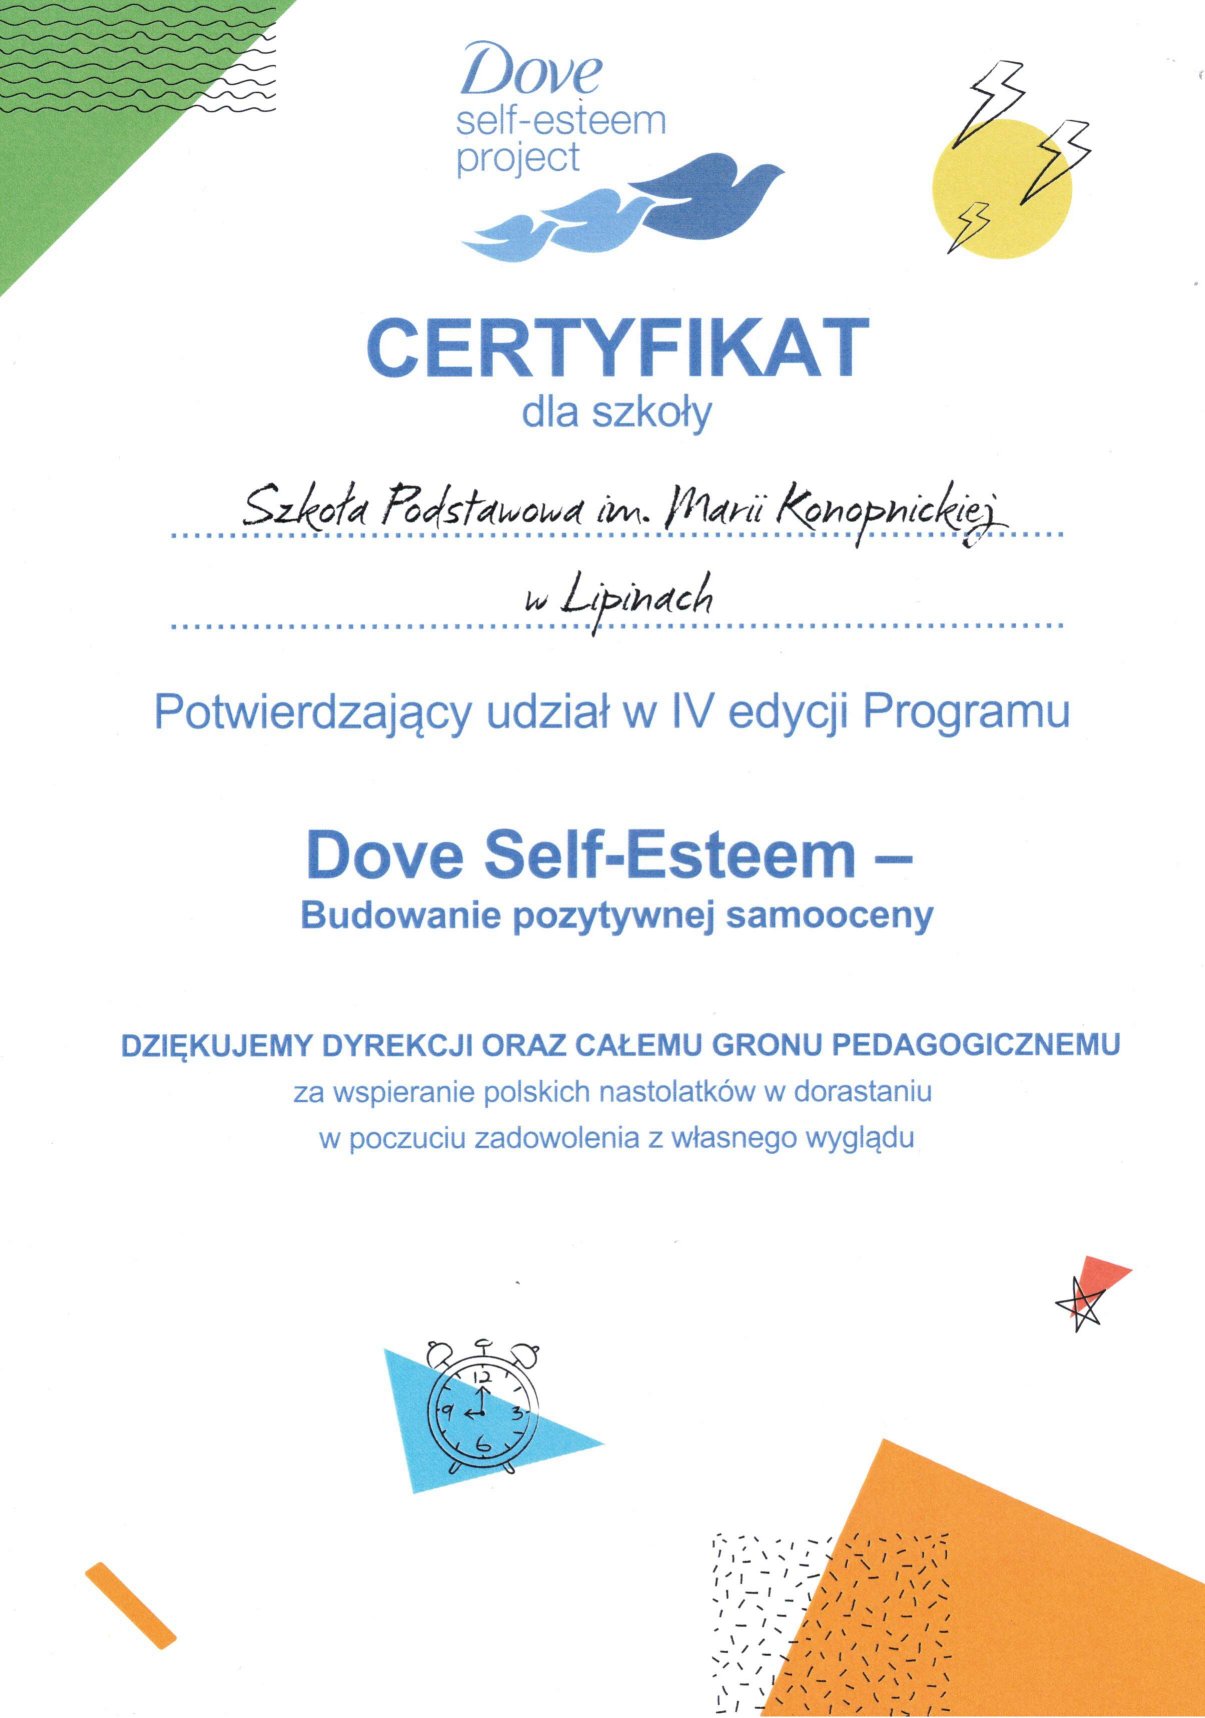 Certyfikat Dove self-esteem